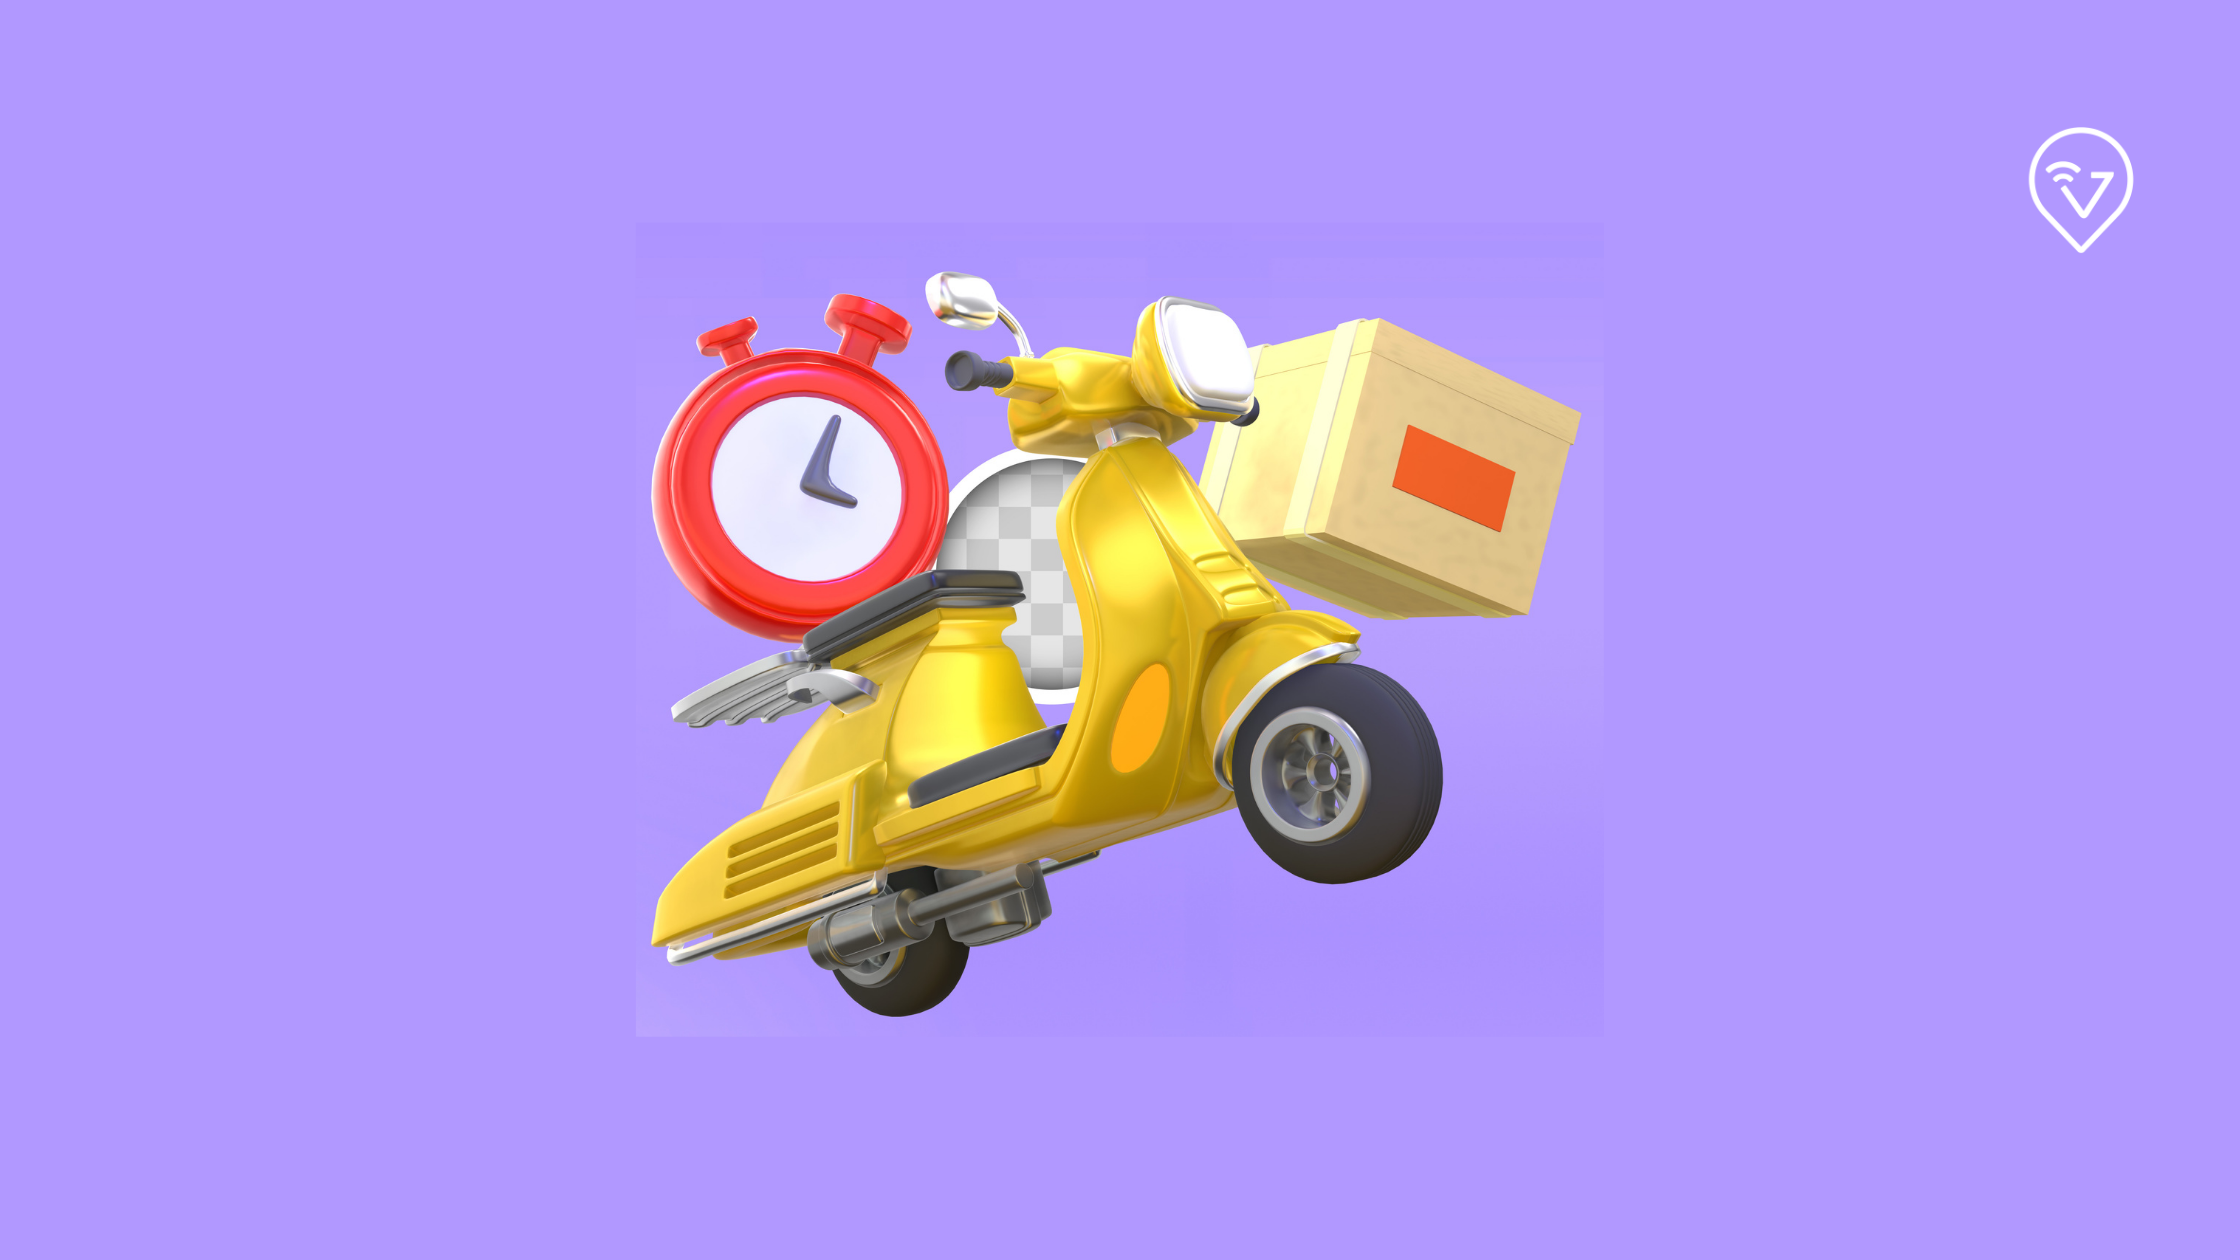 tempo de entrega do delivery: imagem de ícone de uma moto com caixa de entrega e relógio